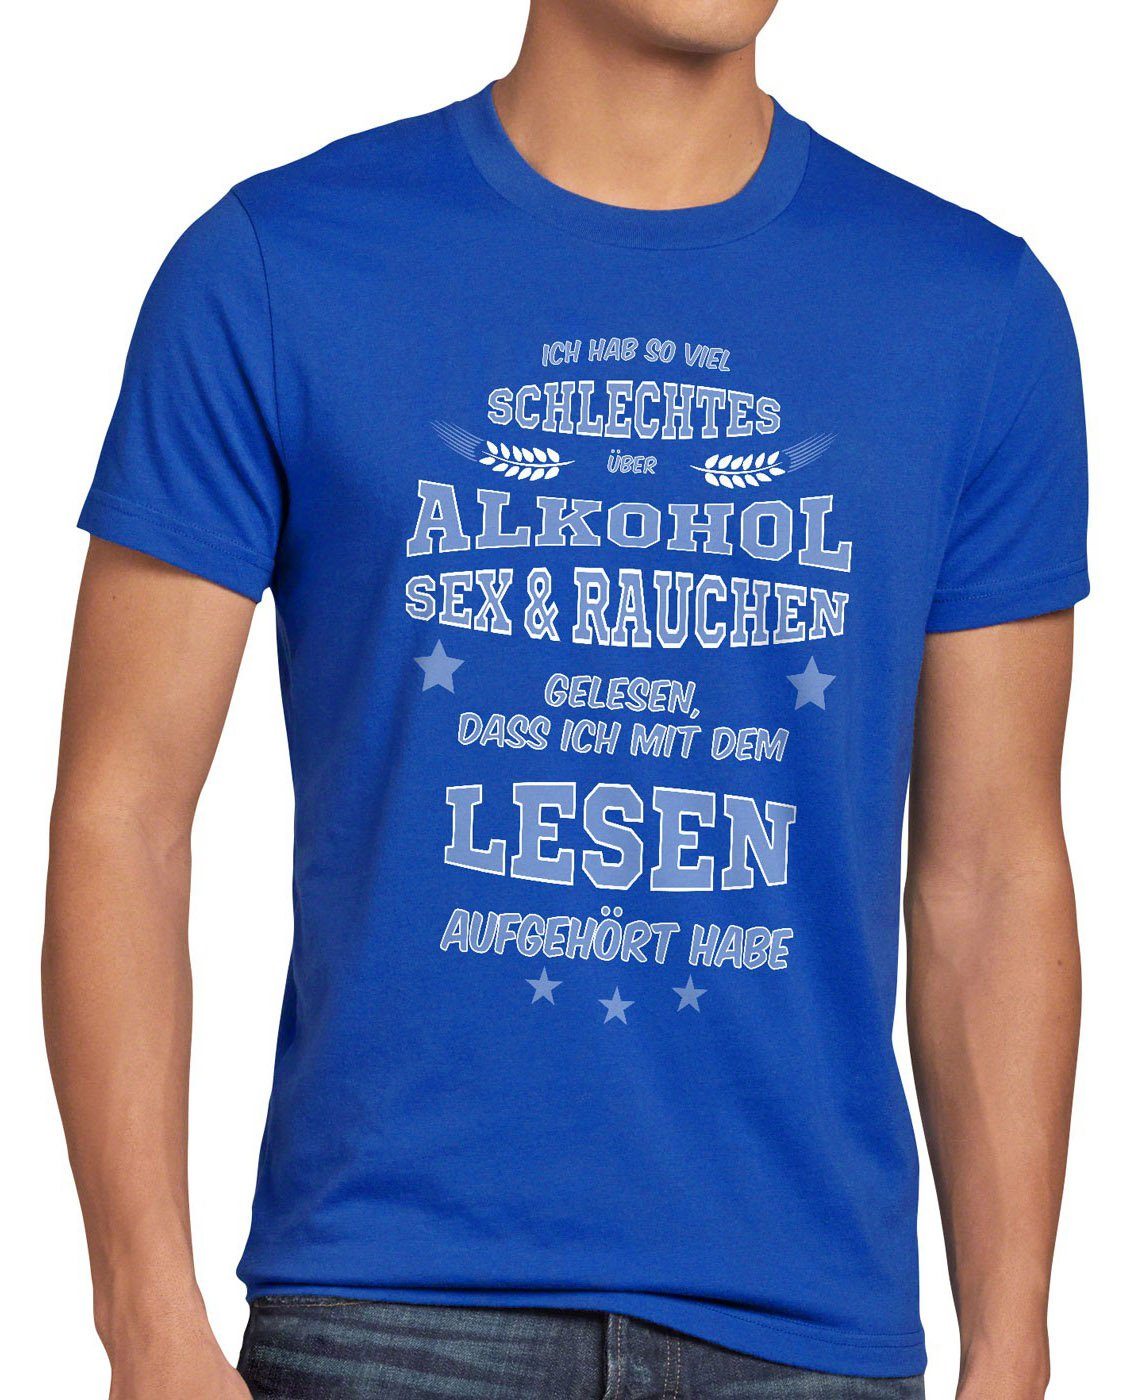 Spruch blau Print-Shirt Sex Funshirt gelesen Rauchen Herren T-Shirt style3 schlechtes Viel Fun Alkohol